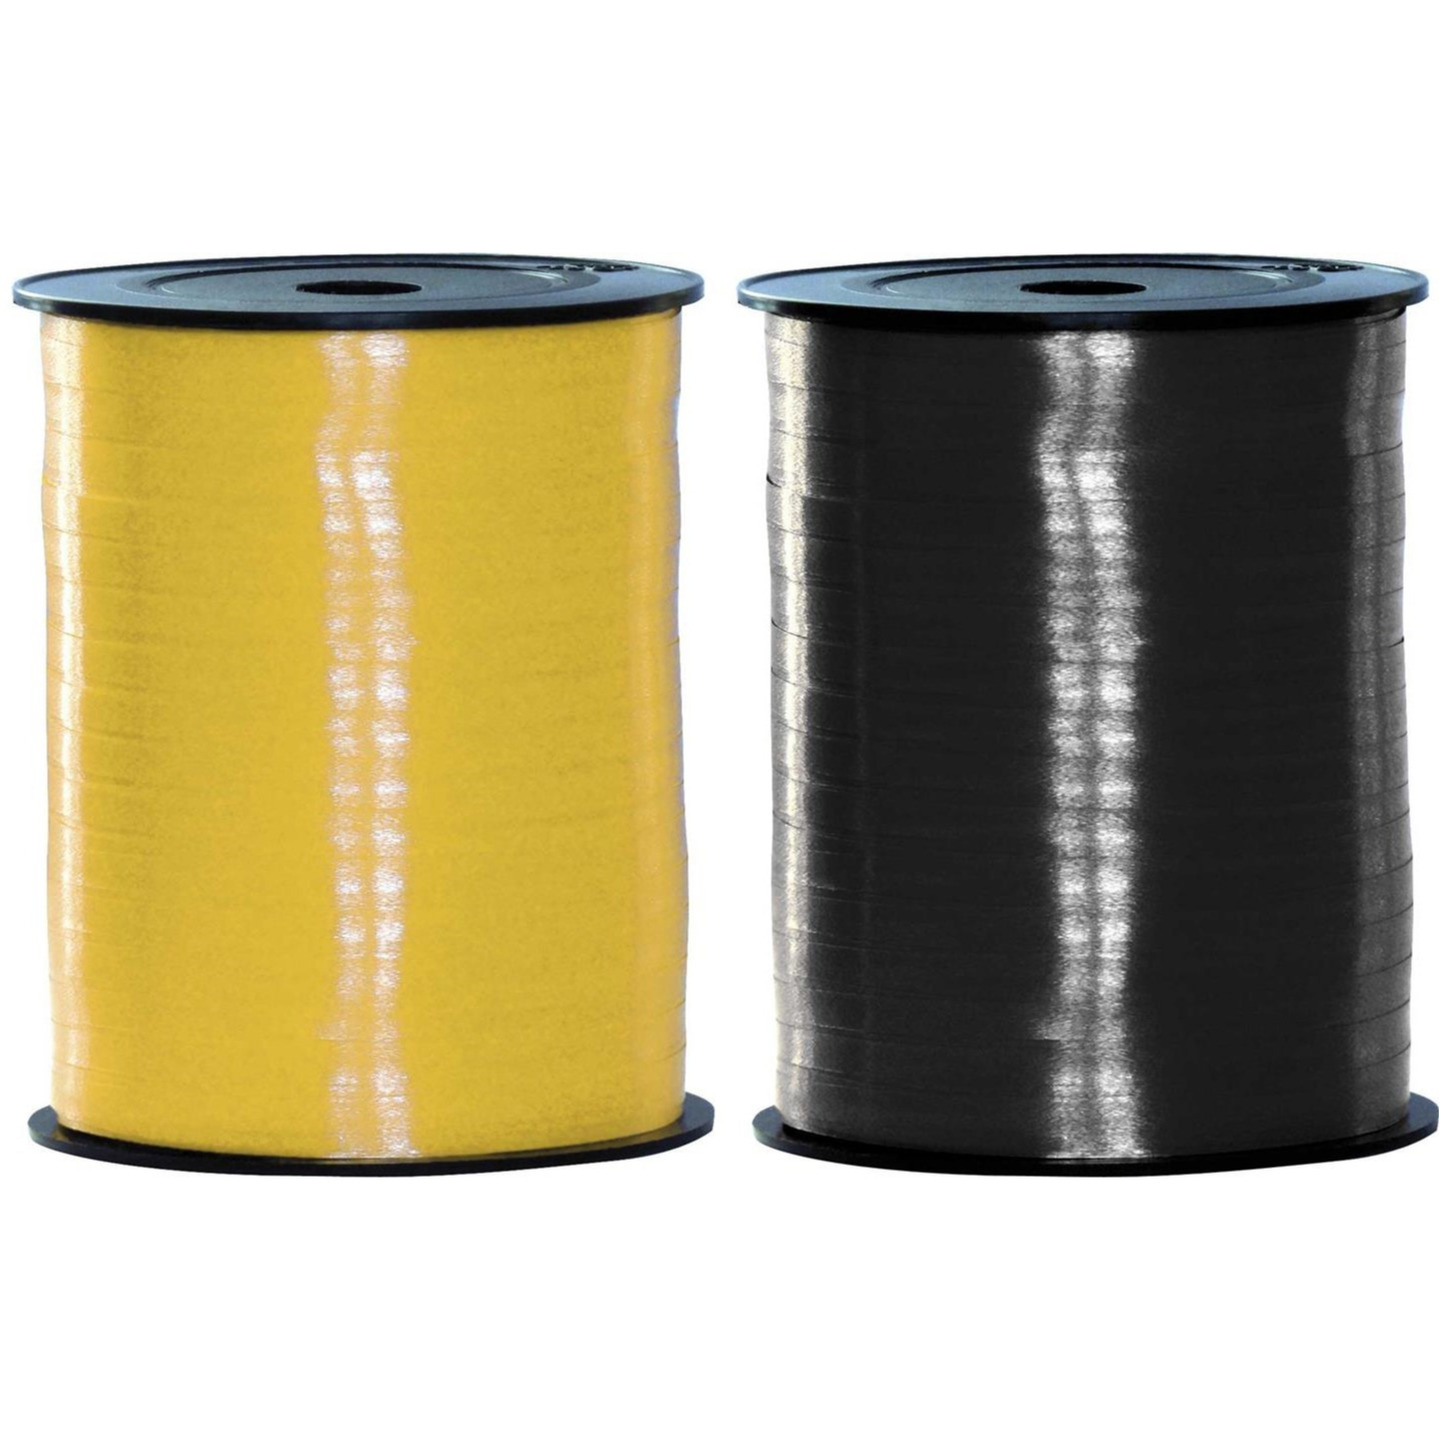 Pakket van 2 rollen lint zwart en geel 500 meter x 5 milimeter breed